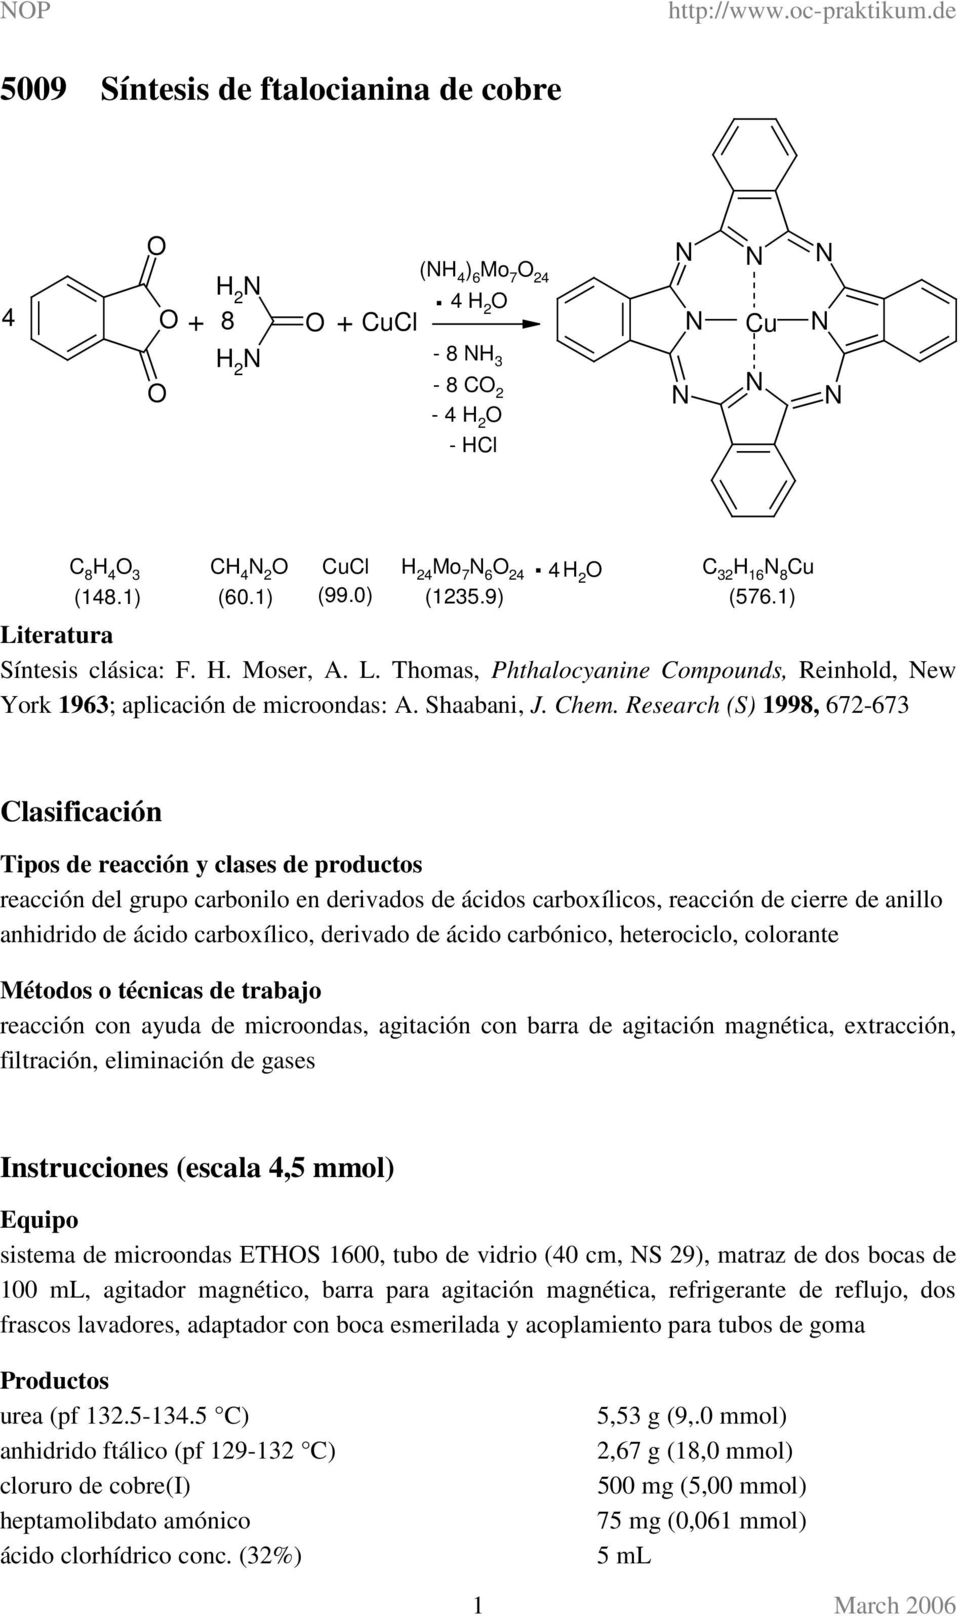 Research (S) 1998, 672-673 Clasificación Tipos de reacción y clases de productos reacción del grupo carbonilo en derivados de ácidos carboxílicos, reacción de cierre de anillo anhidrido de ácido